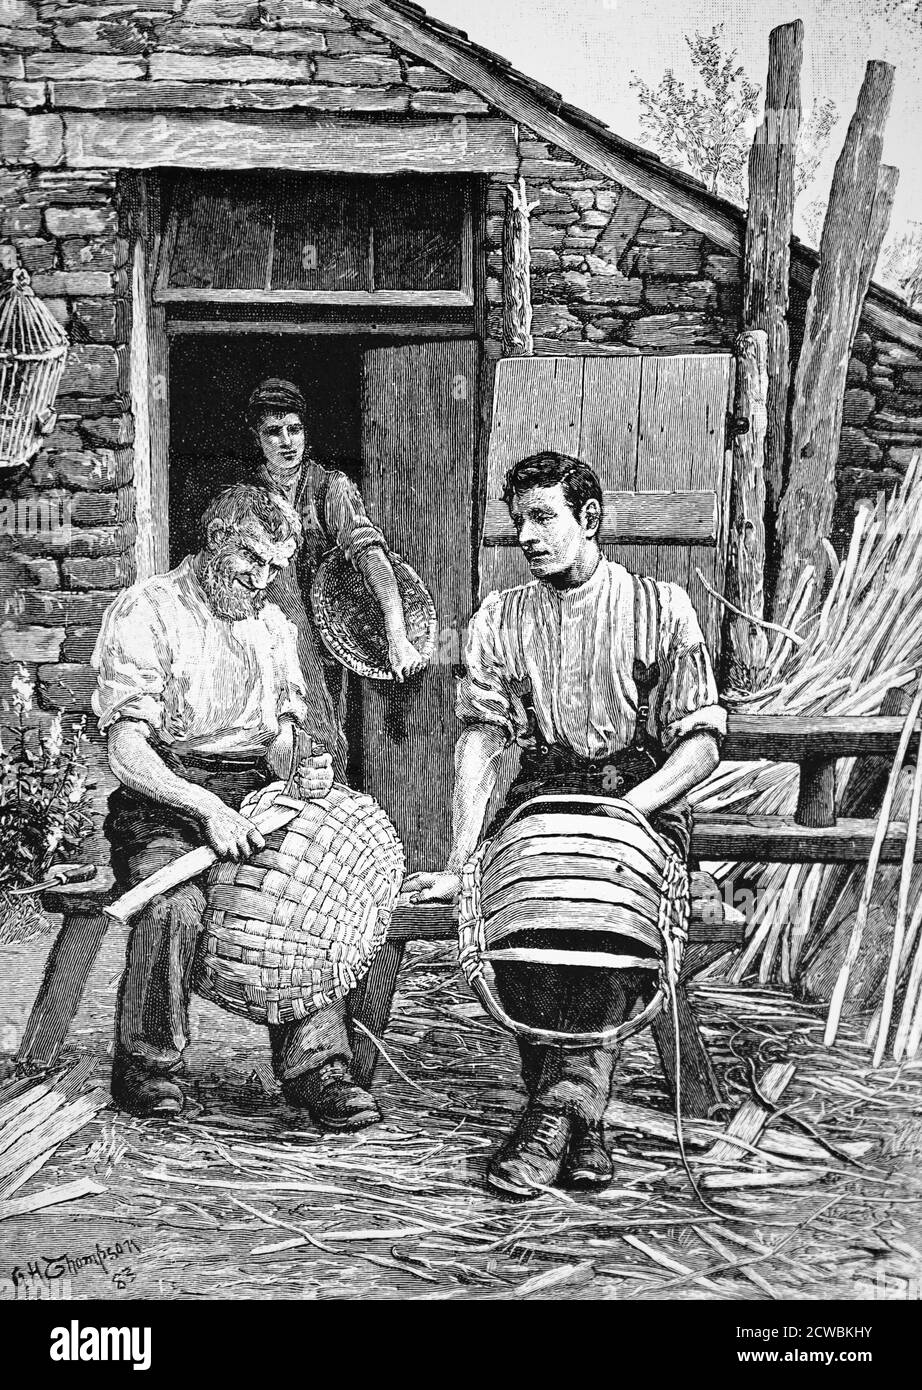 Gravur, die Handwerker aus dem Lake District zeigt, die "Willensbilder" machen. Dies waren Körbe aus geteilter Eiche auf einem ovalen Esche- oder Haselrahmen, der für die Verkohlung von Dampfmaschinen und für landwirtschaftliche Arbeiten verwendet wurde. Stockfoto